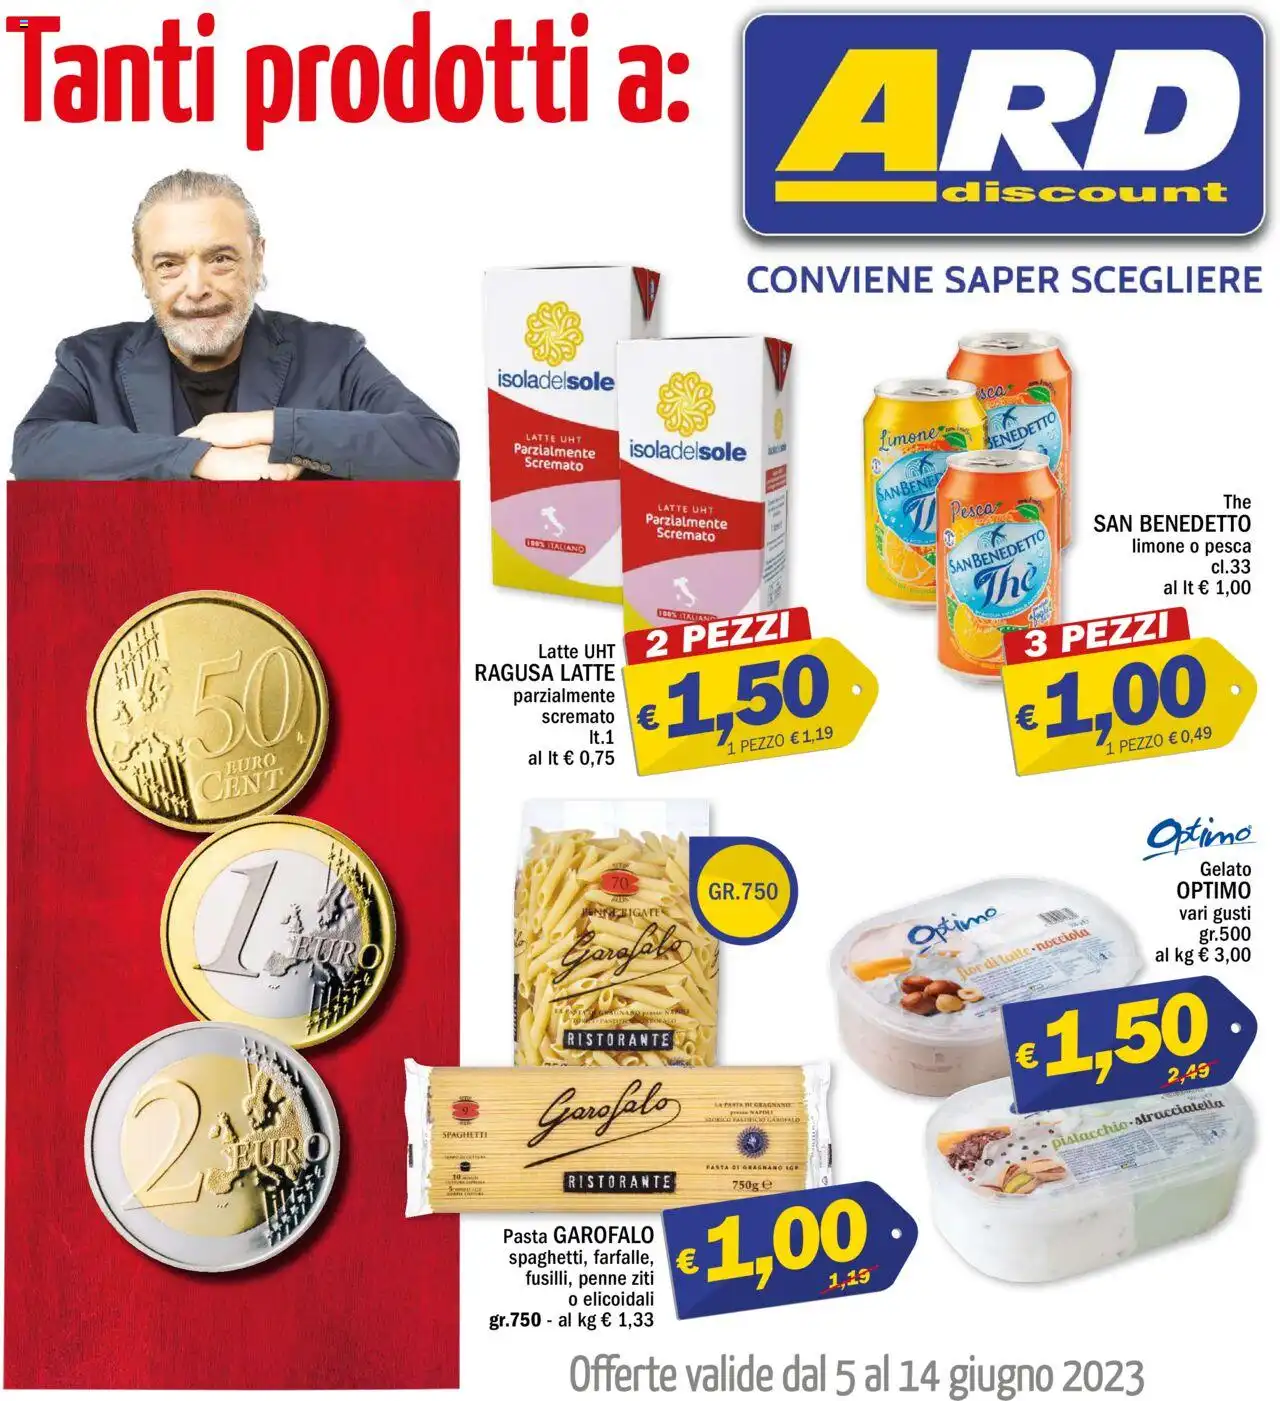 Volantino ARD Discount Prodotti a 0.50€ 1€ 2€ dal 5 al 14/06/2023